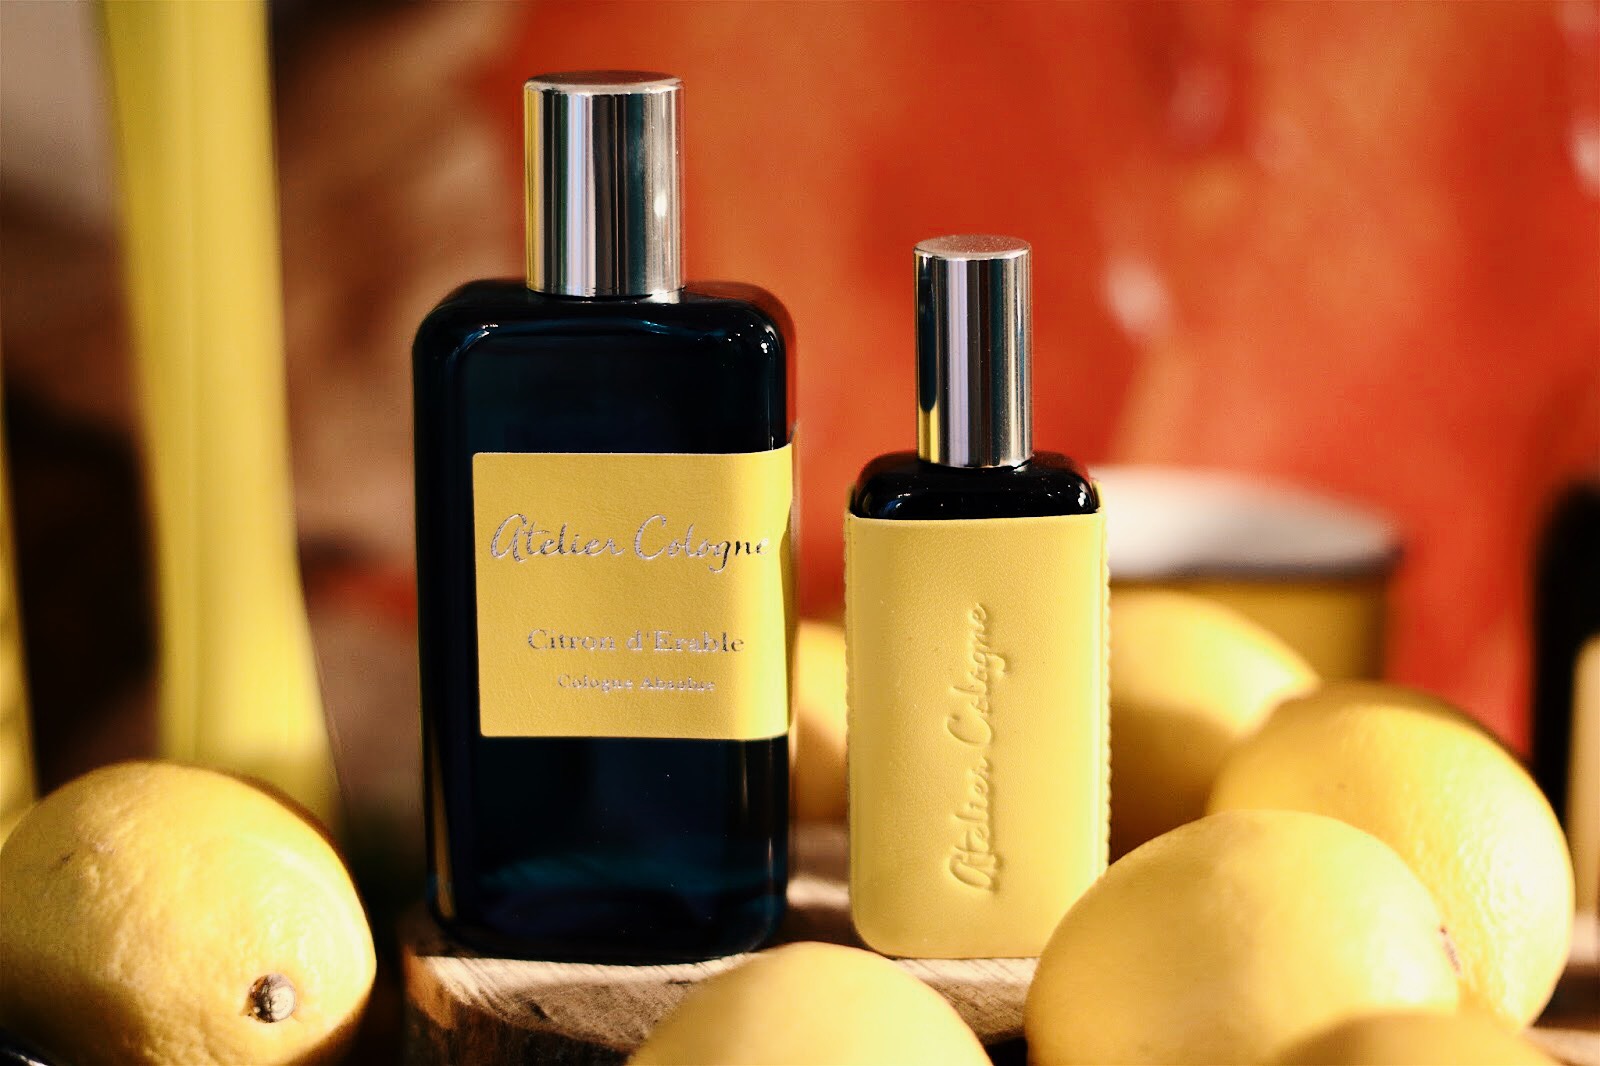 Nước hoa Citron d’Erable trứ danh nhà Atelier Cologne được mệnh danh là cực phẩm thơm tho trong bảng xếp hạng các mùi hương nhóm citrus.